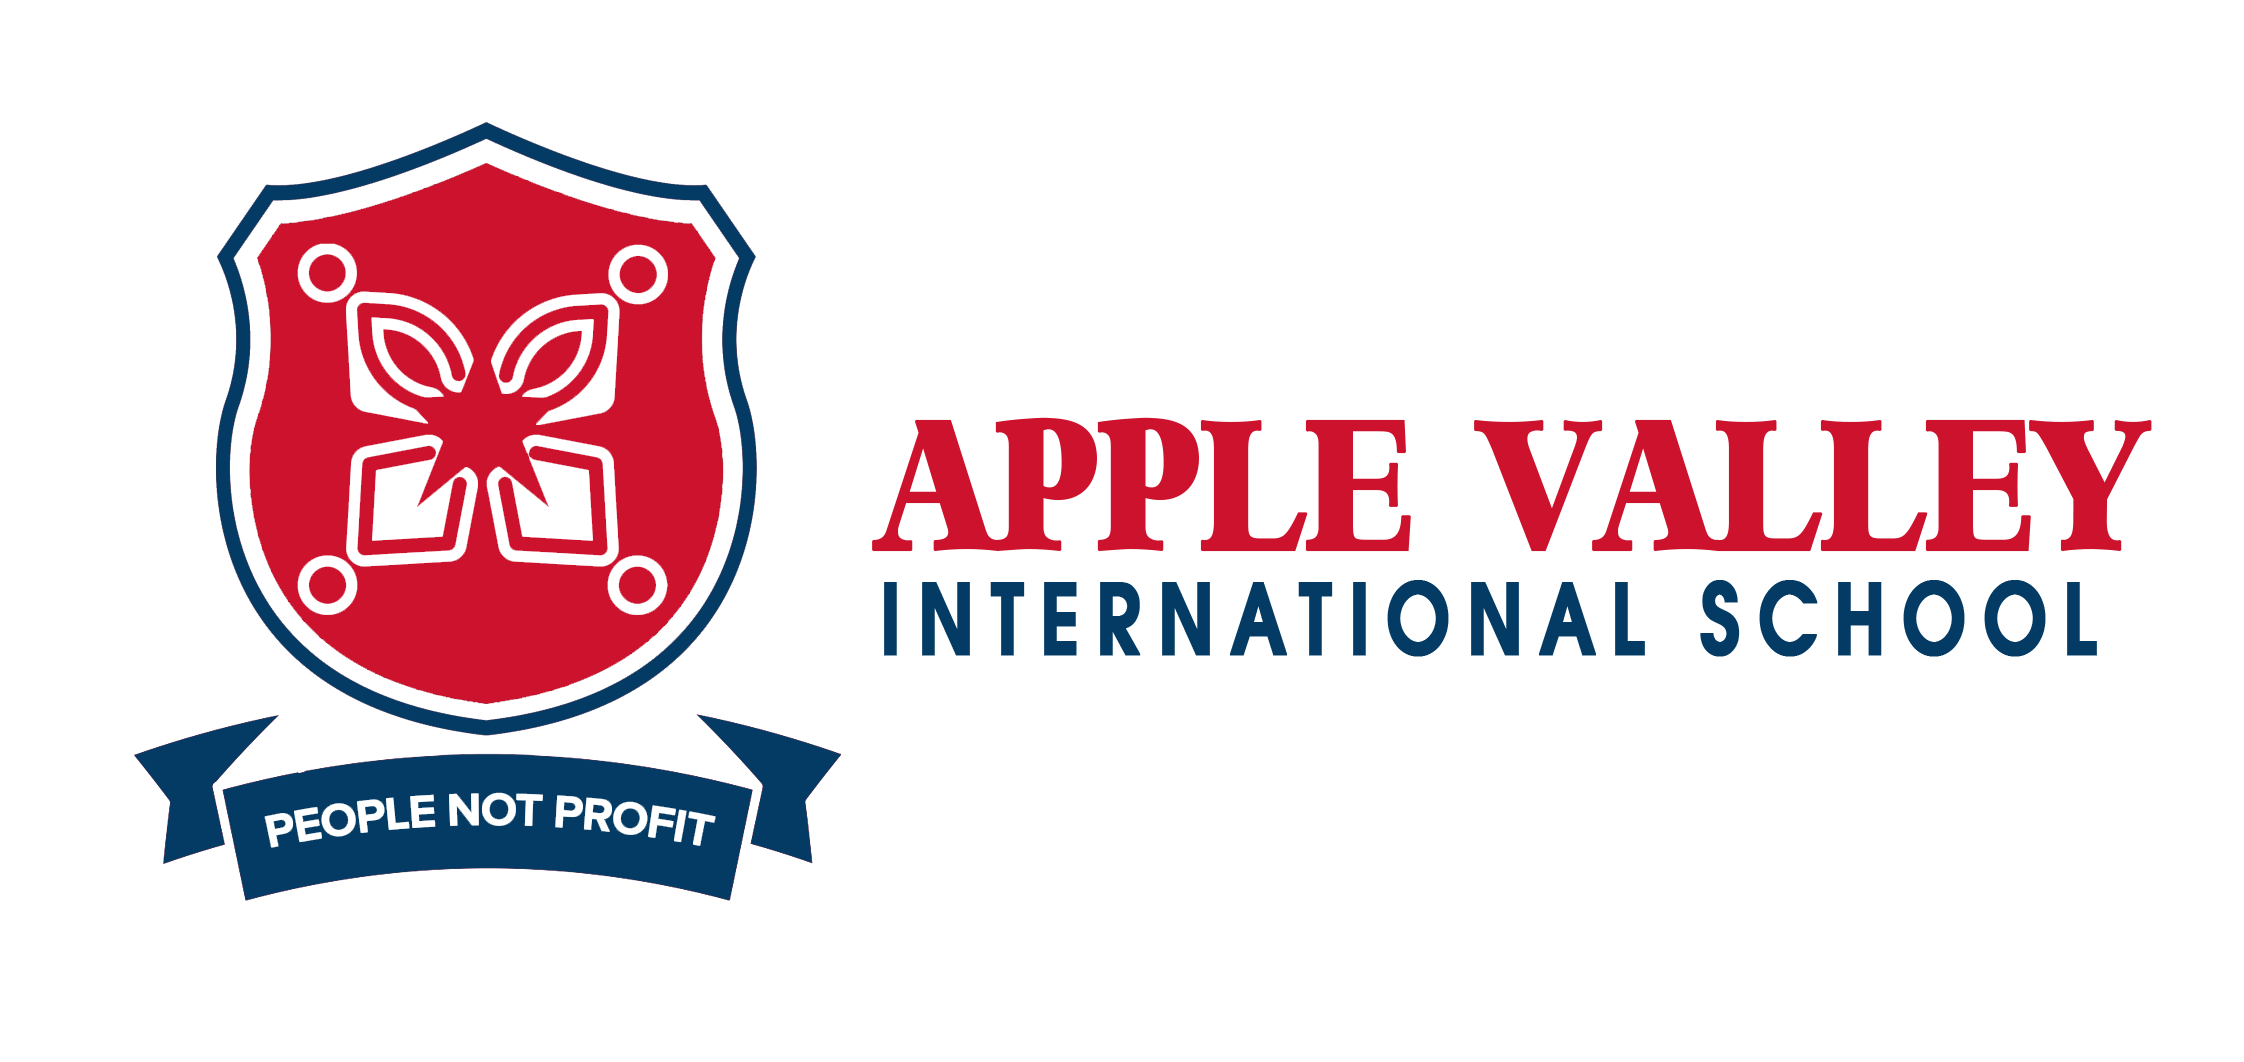 Apple Valley School